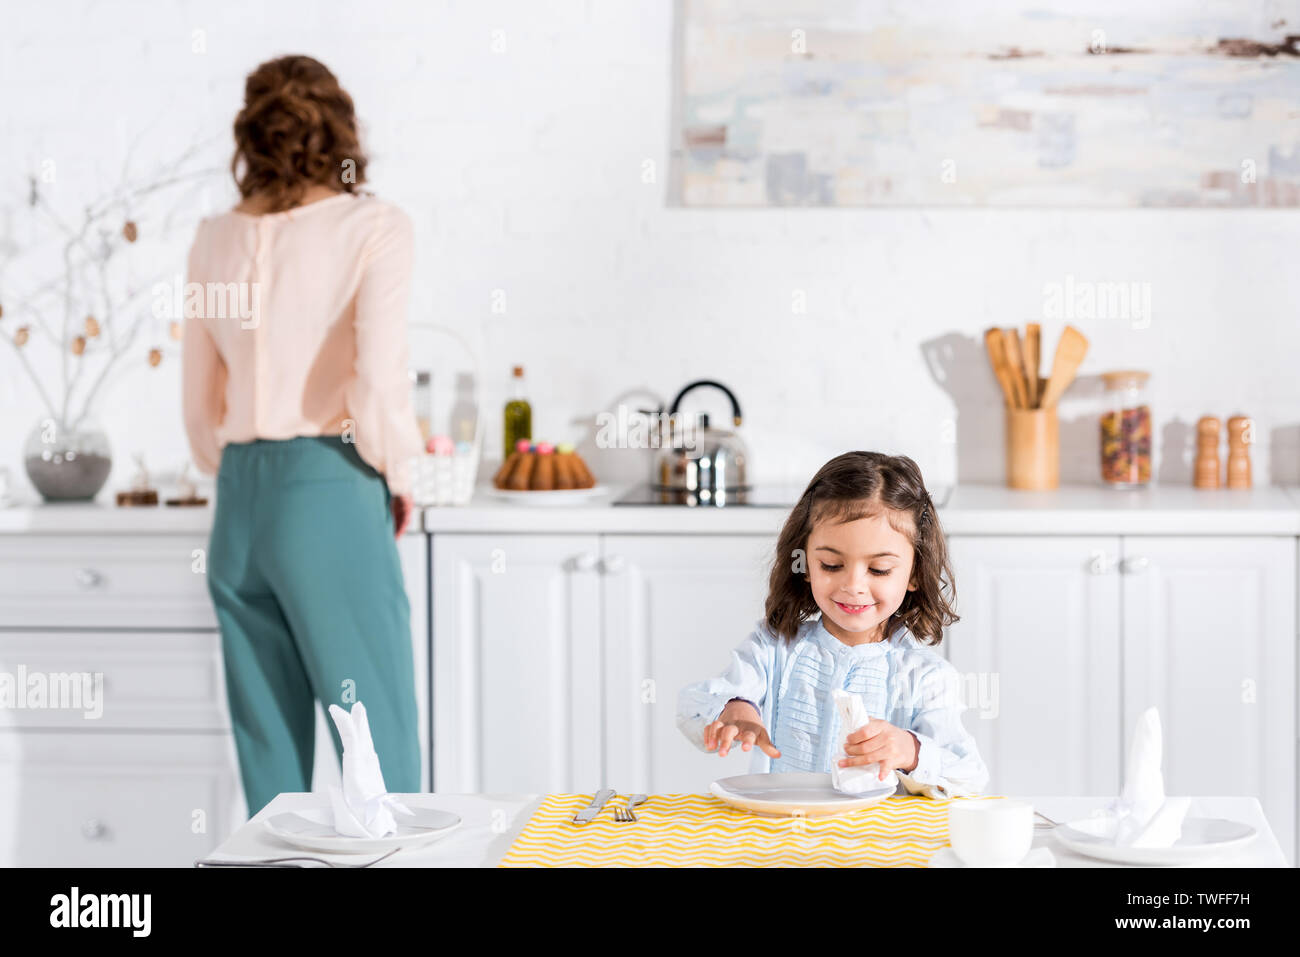 Lächelnd Vorschüler kid Falten Serviette am Tisch in der Küche Stockfoto